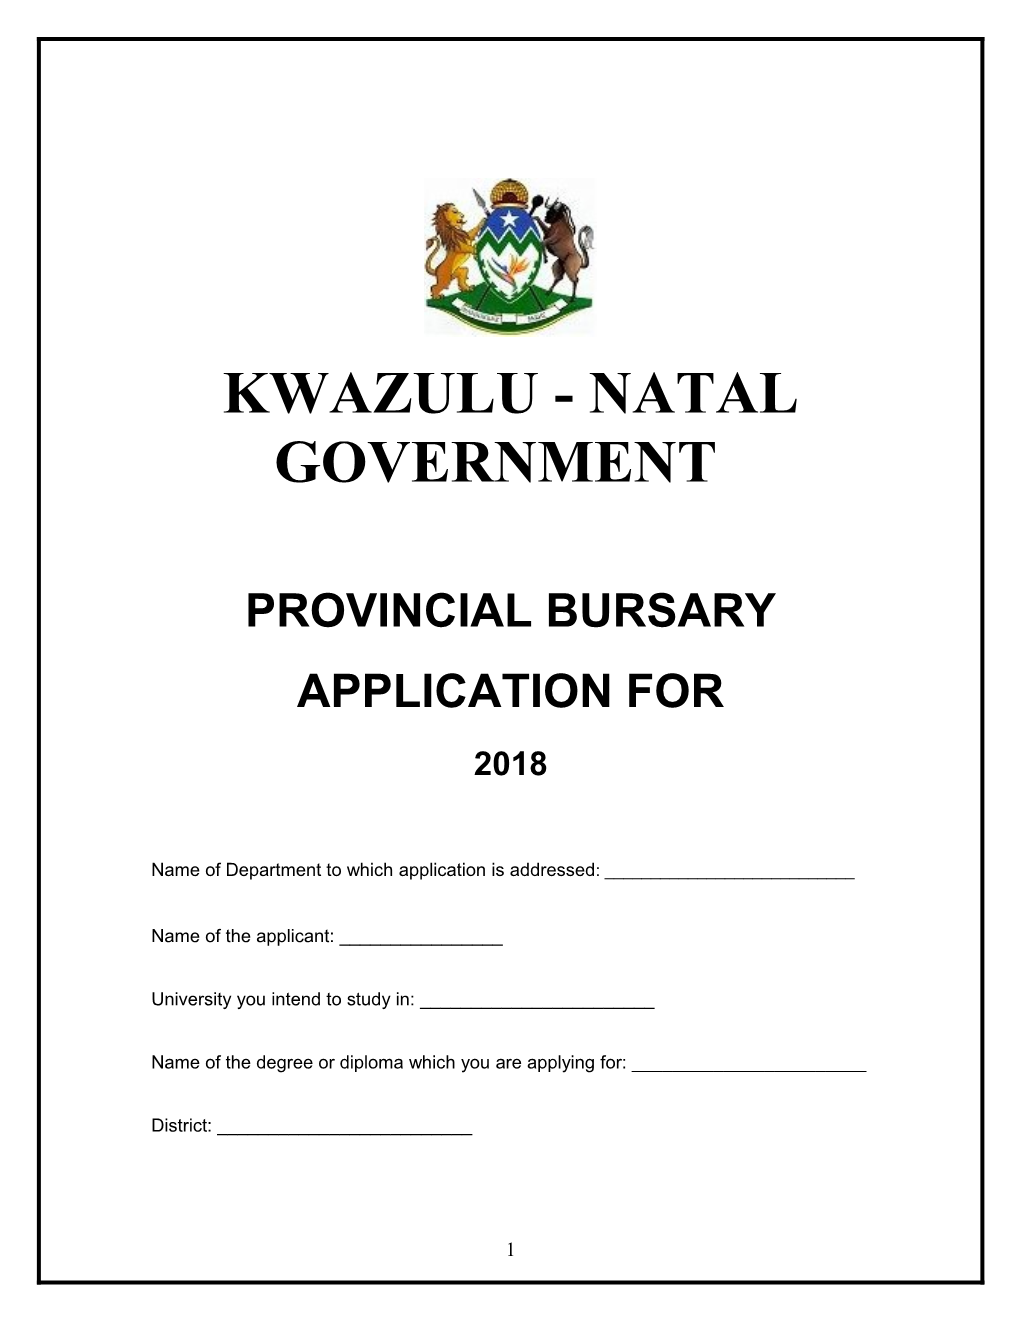 Provincial Bursary Application For